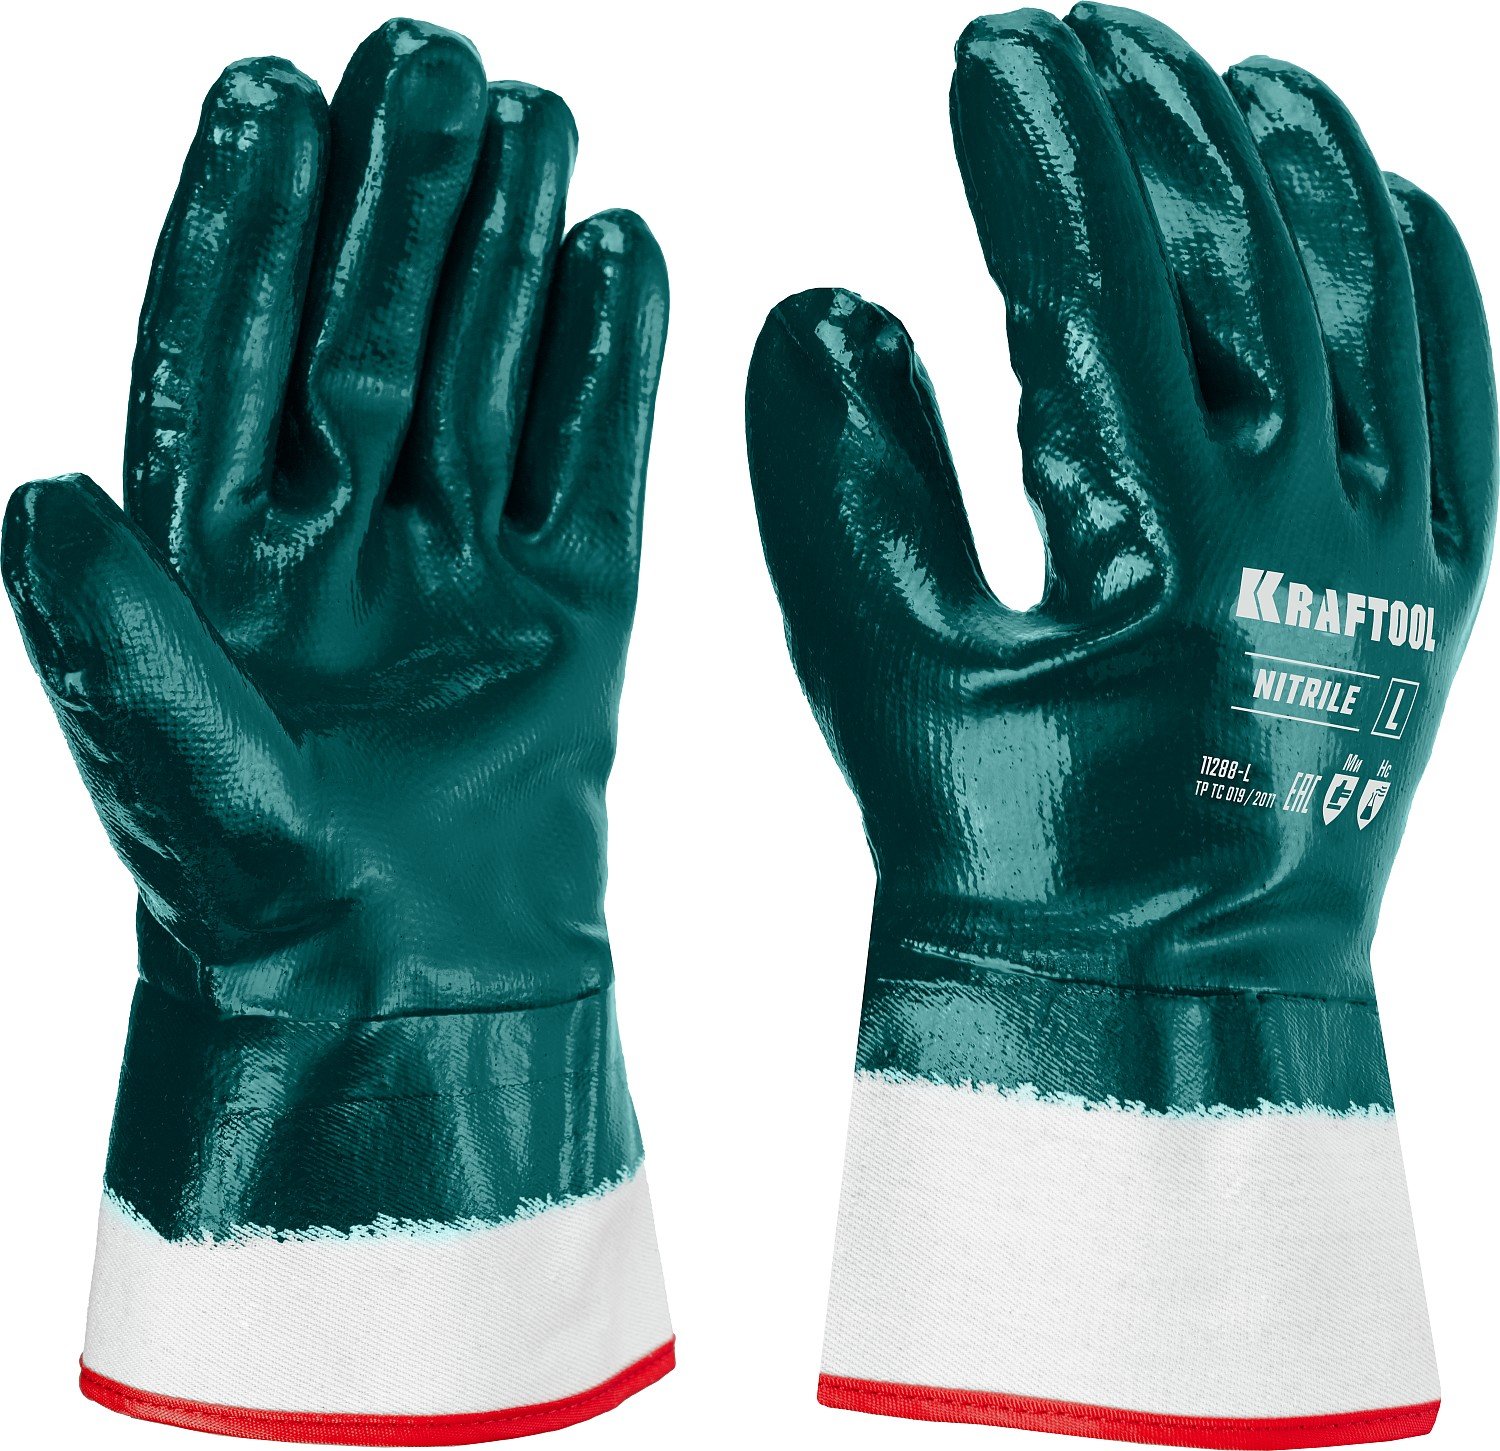 Особопрочные перчатки KRAFTOOL, нитриловое покрытие, максимальная защита от нефтепродуктов, износостойкие, L(9), HYKRAFT (11288-L)Купить